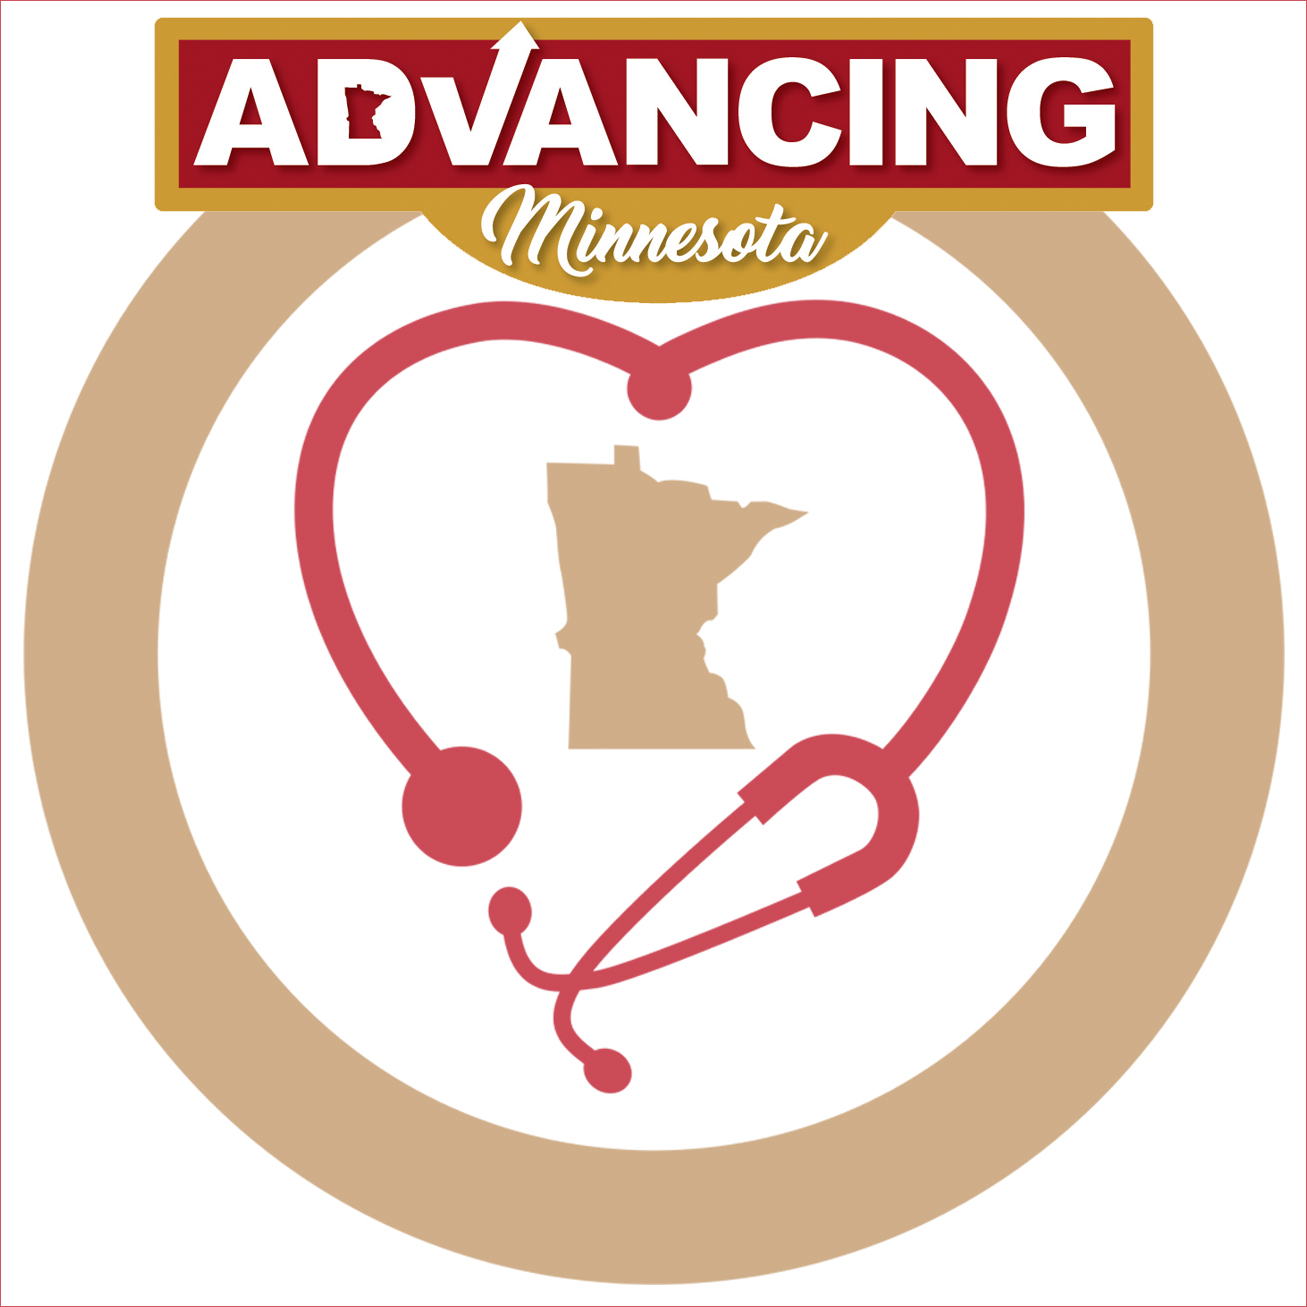 Senate Republicans are Advancing Minnesota's health care